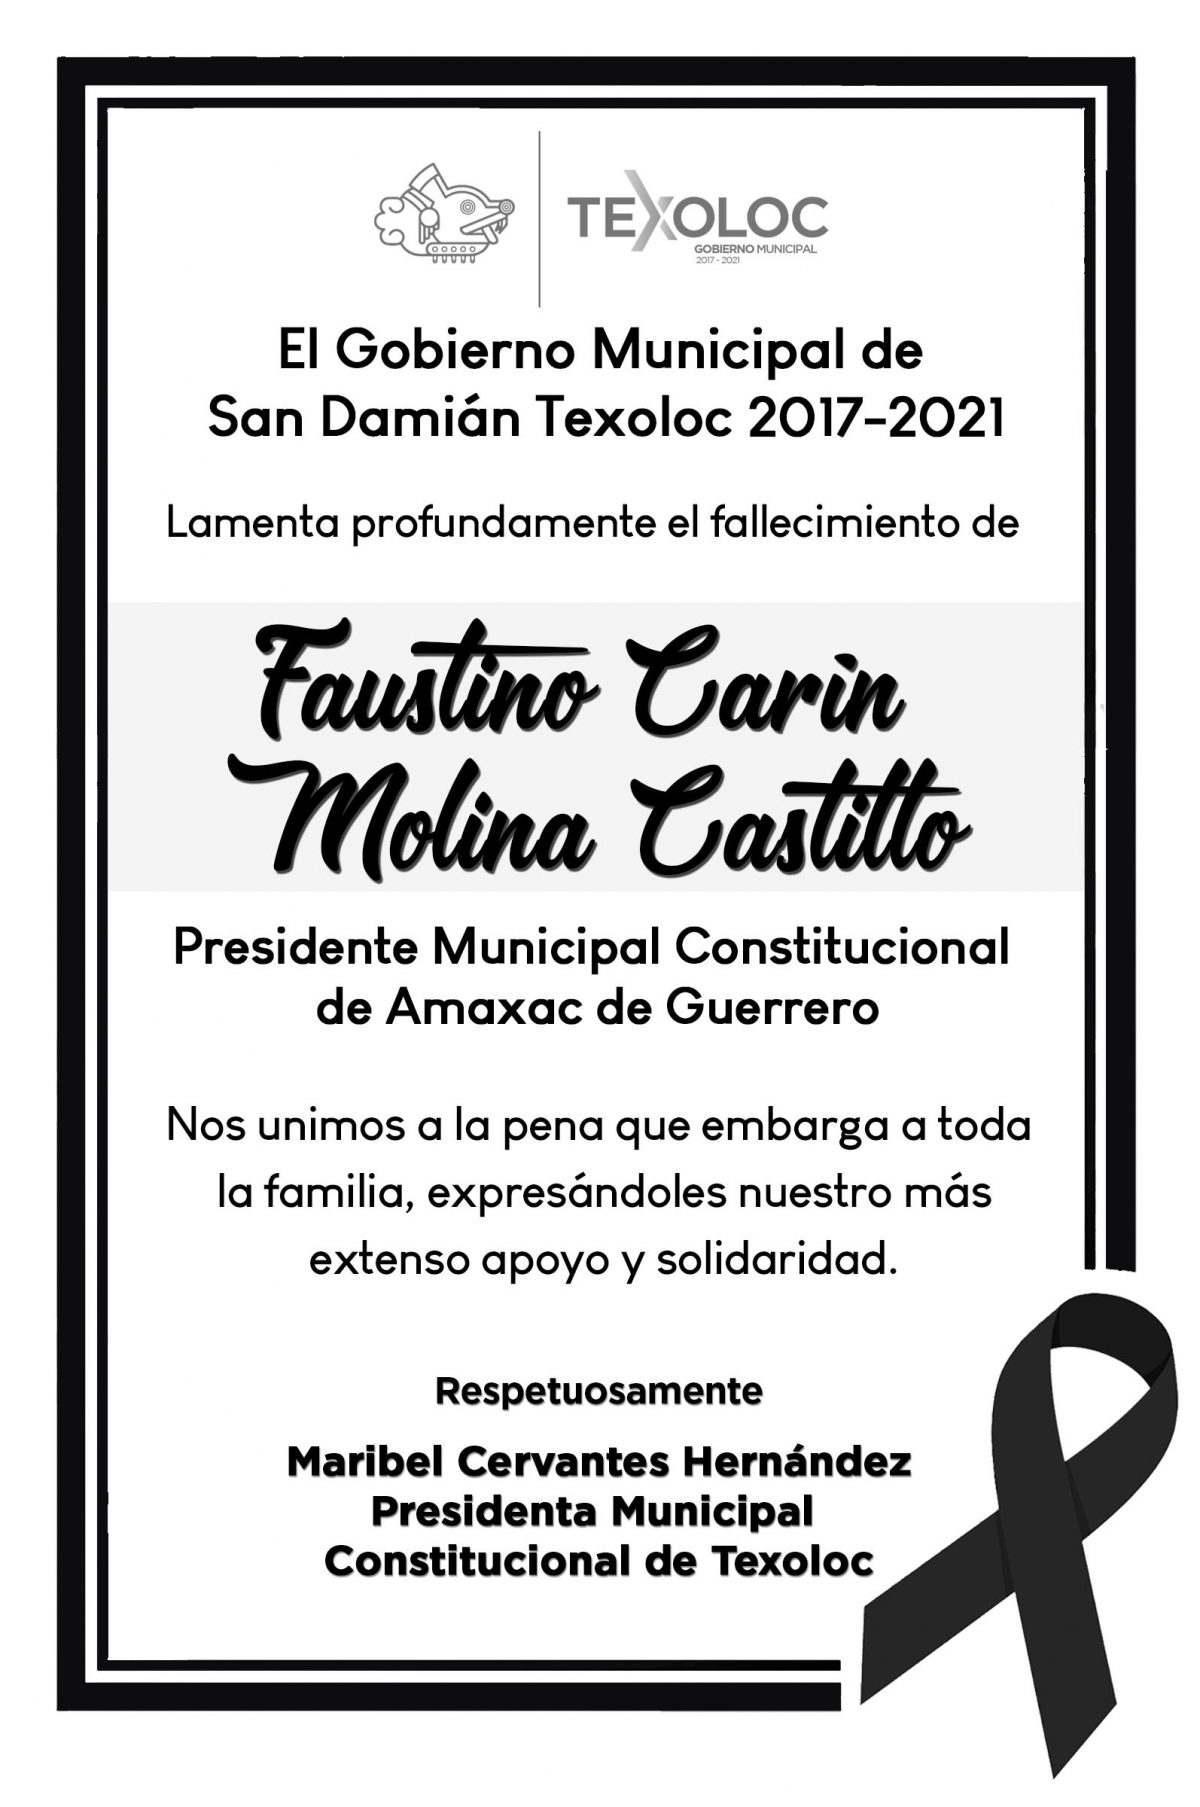 El Ayuntamiento de Texoloc, expresa  su solidaridad  al municipio de Amaxac por el  fallecimiento del Alcalde,  Faustino Carin Molina Castillo.